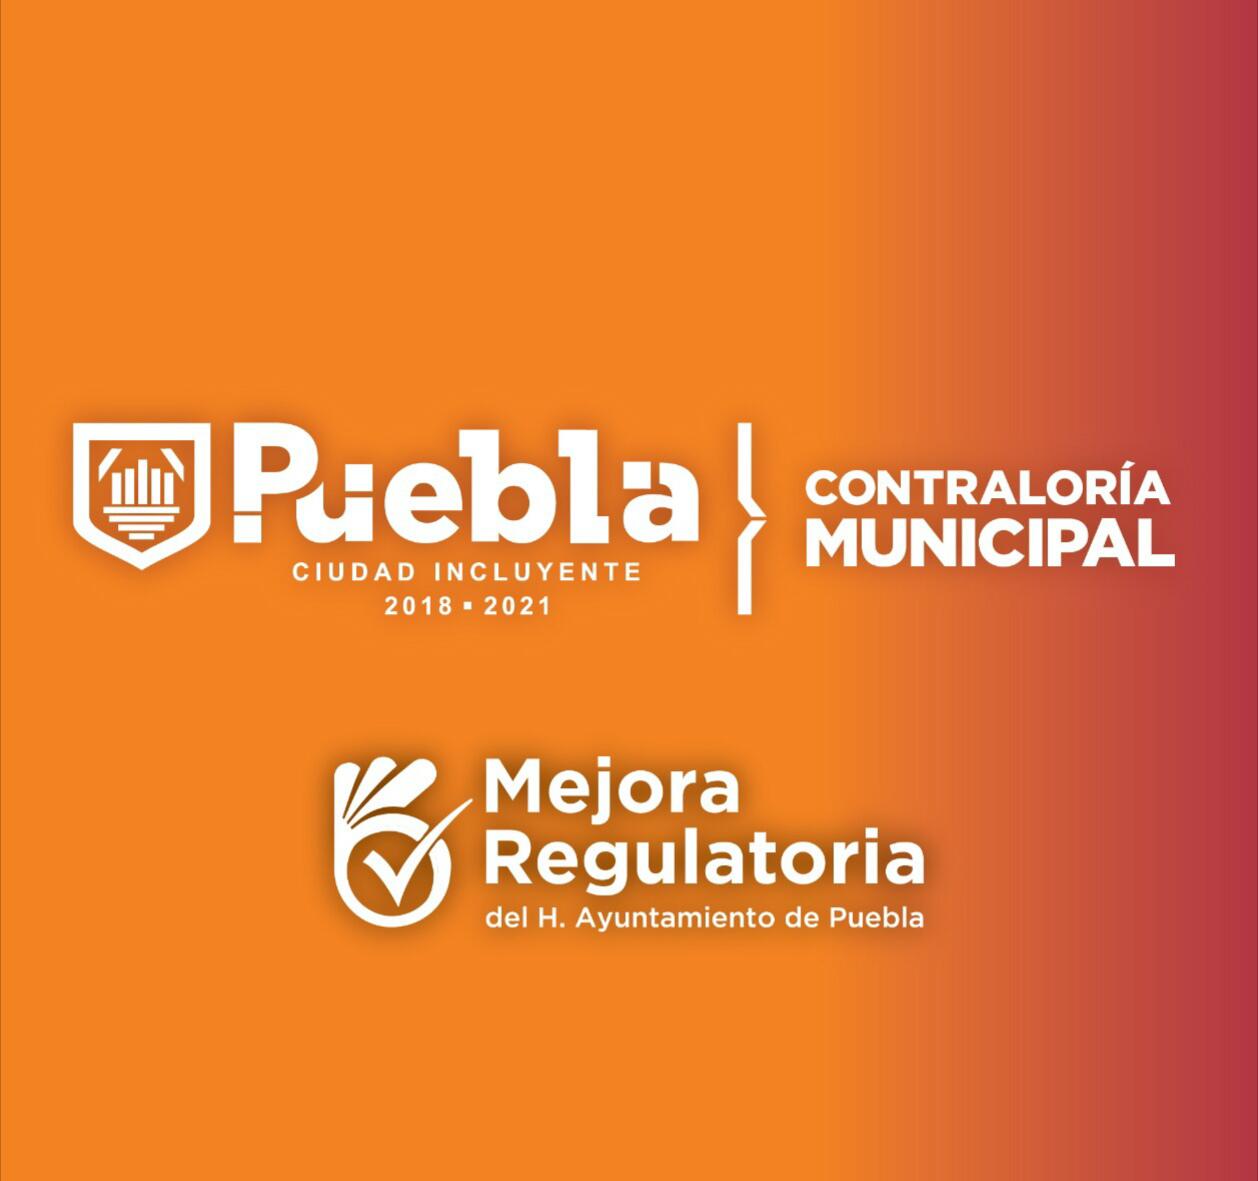 Reconocen a nivel nacional mejora regulatoria en municipio de Puebla